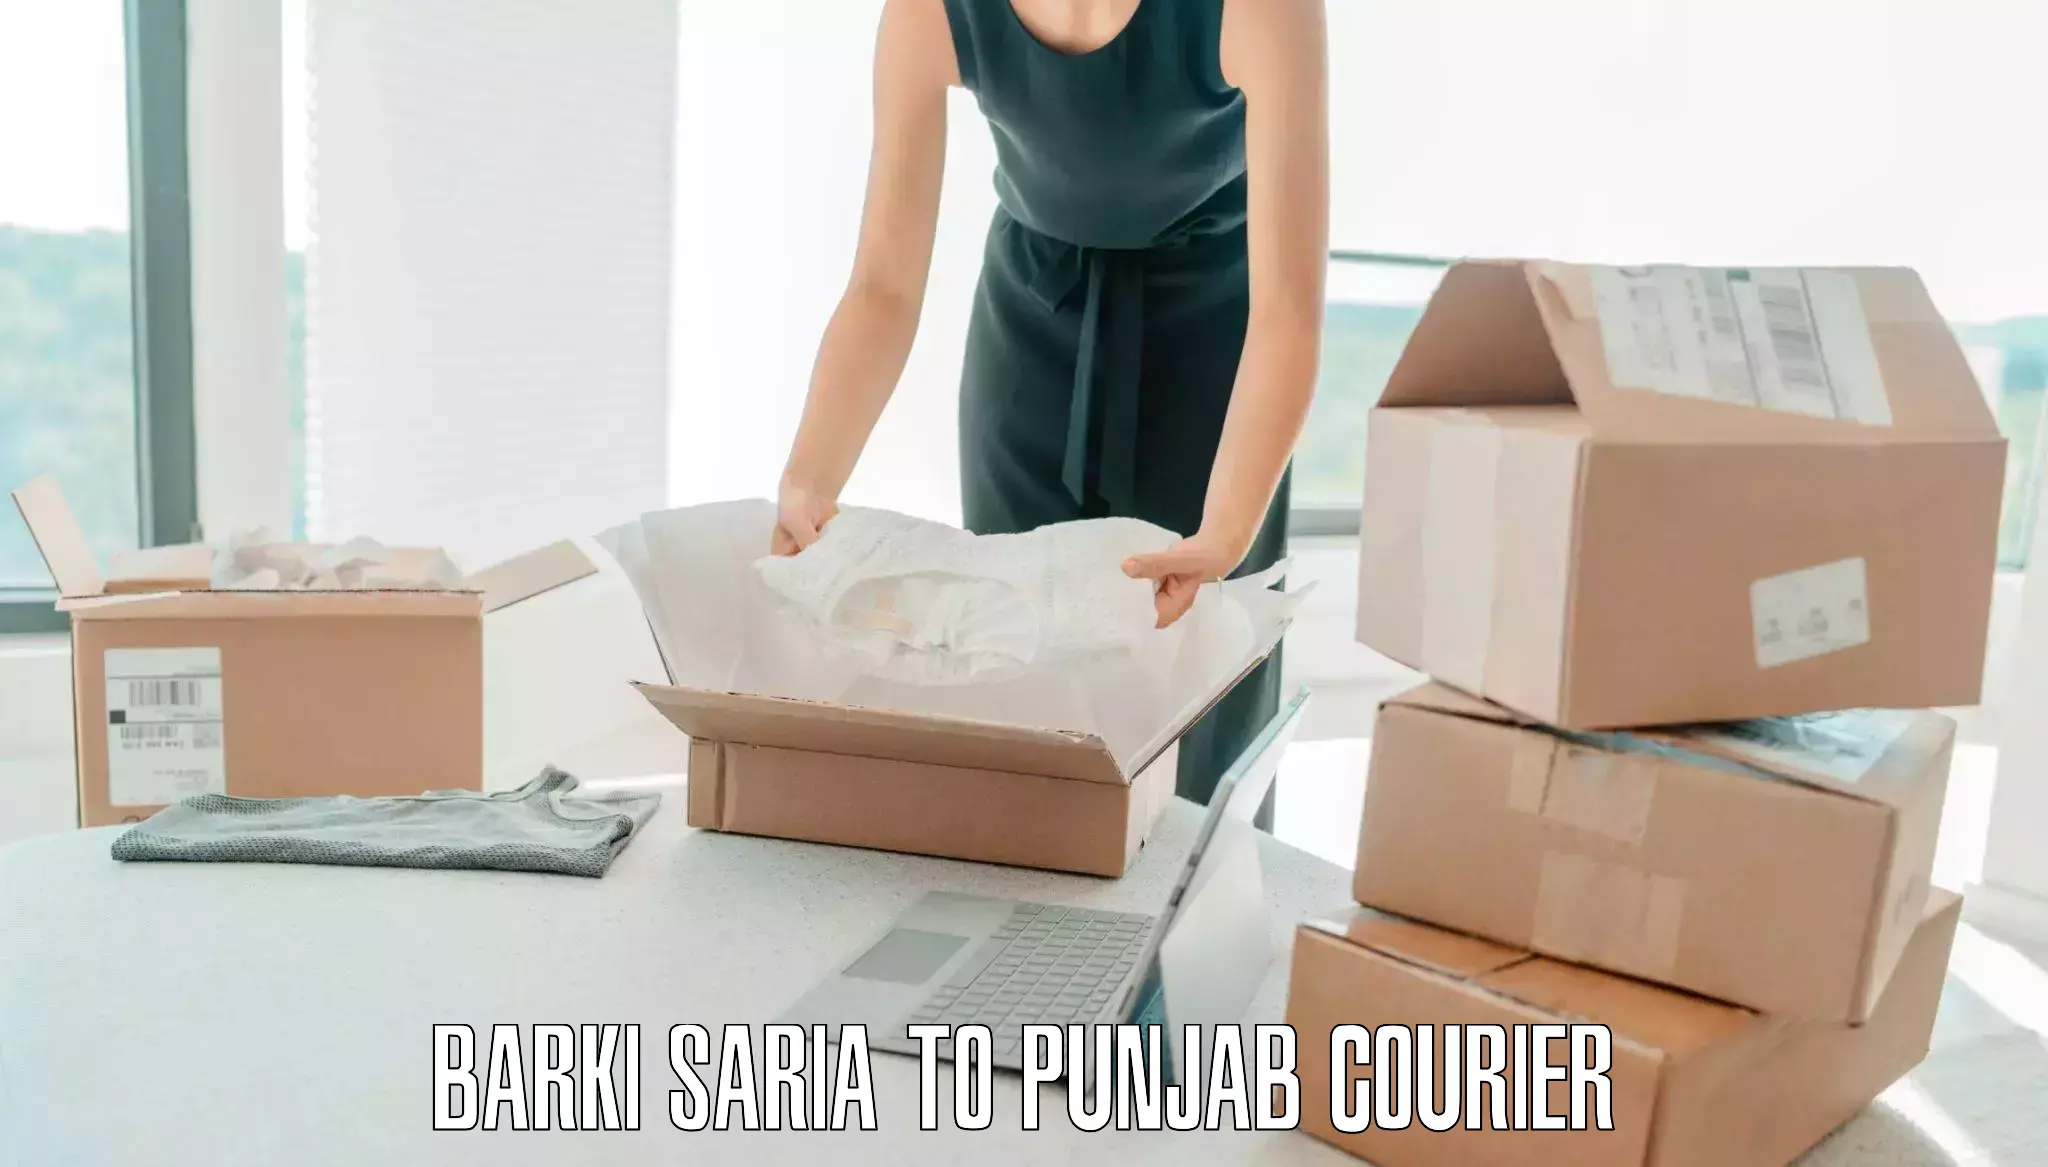 Professional baggage transport Barki Saria to Punjab